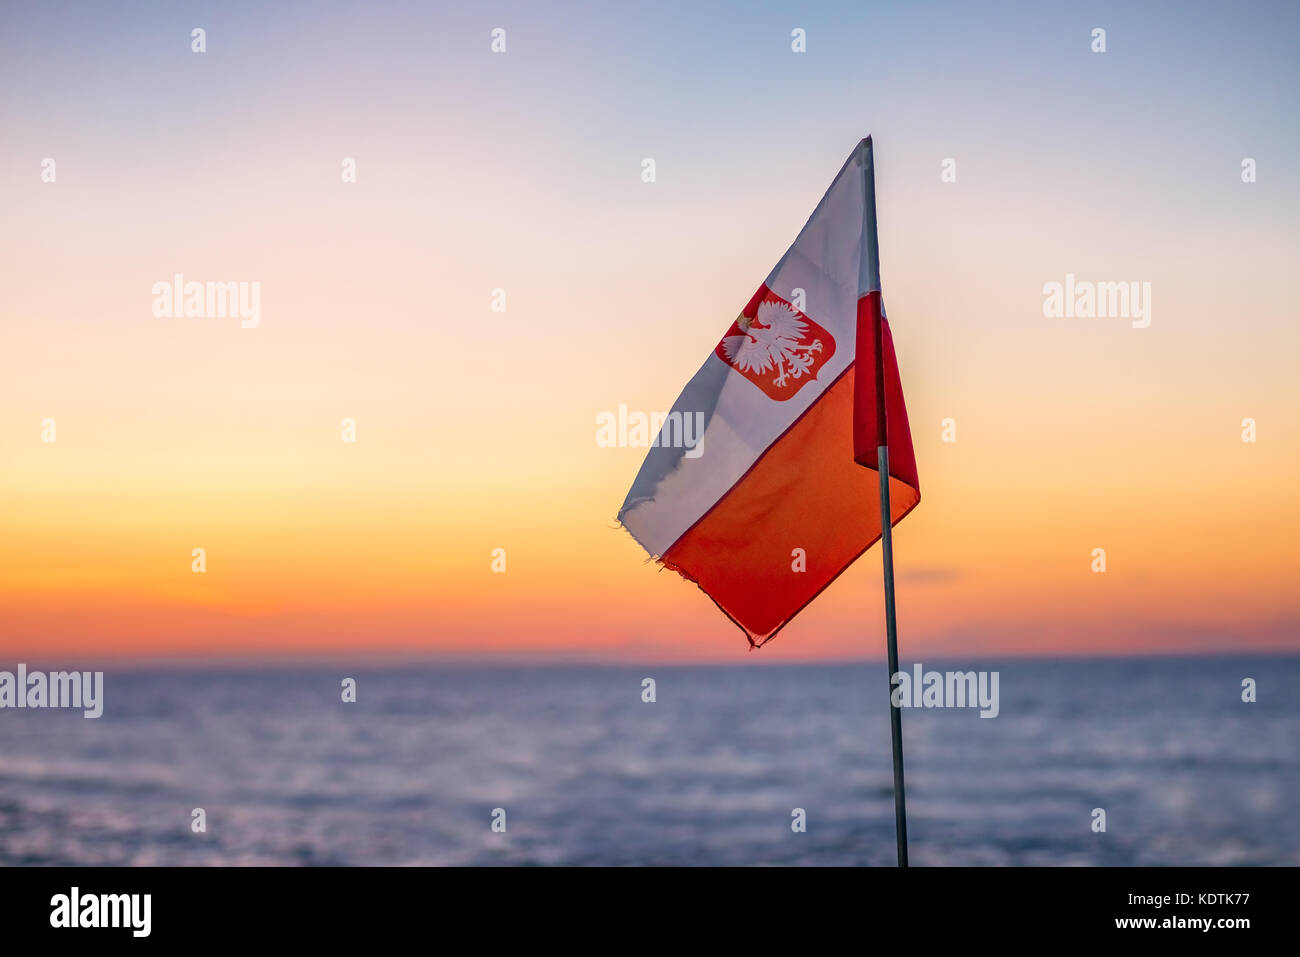 Le rouge et le blanc du drapeau national polonais avec l'emblème de l'aigle palpitations dans le vent sur une plage au coucher du soleil Banque D'Images